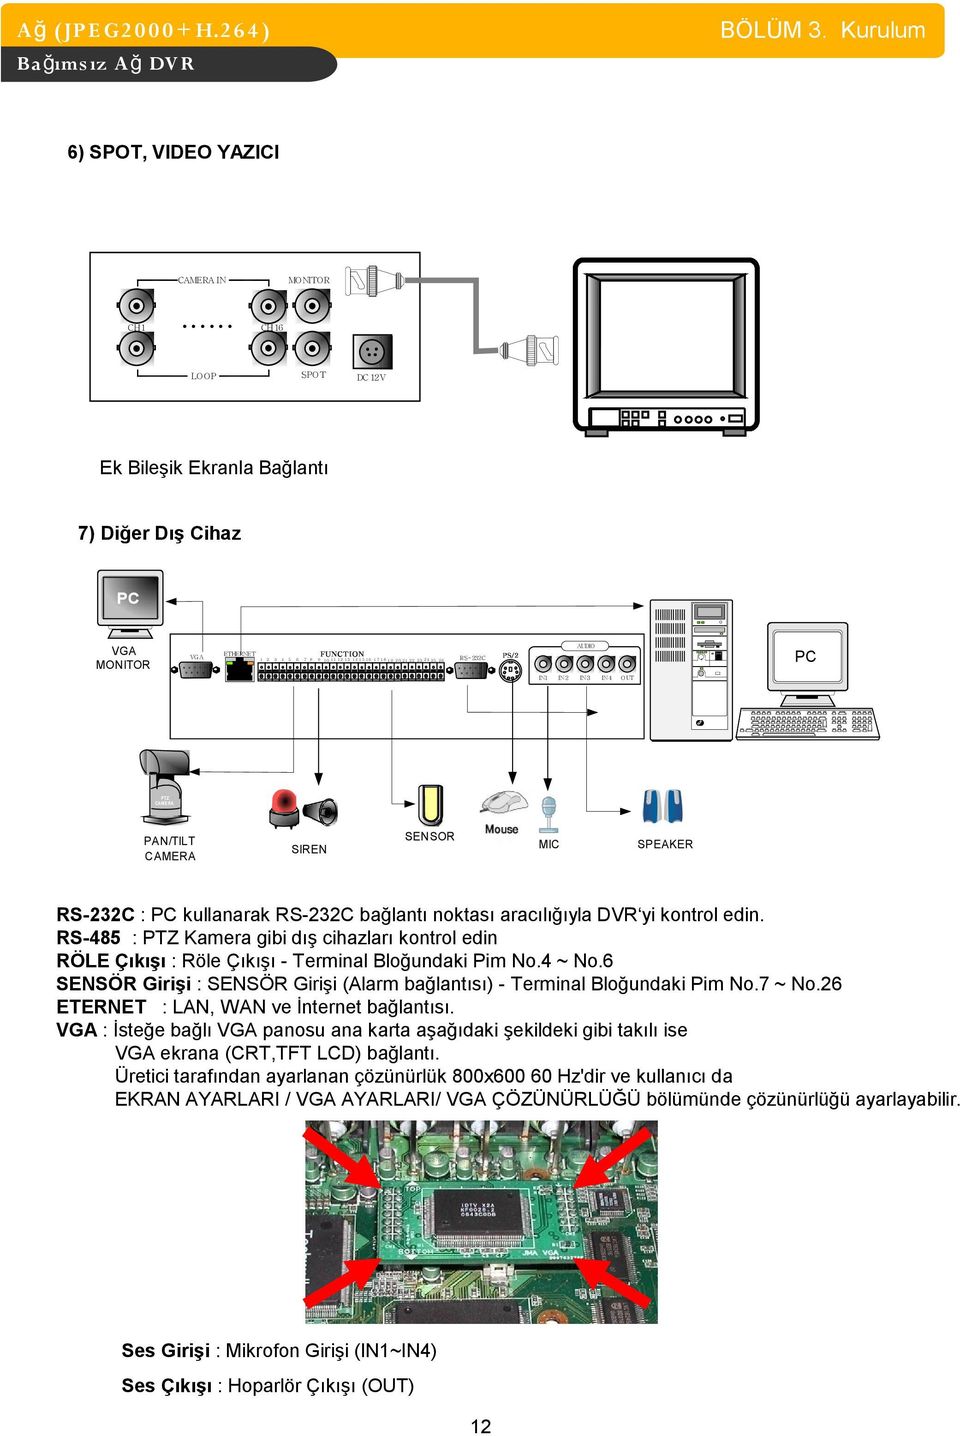 17 18 1 9 2 0 21 22 2 3 2 4 25 26 PC RS-232C IN1 IN2 IN3 IN4 O UT PTZ CAMERA PAN/TILT CAMERA SIREN SENSOR MIC SPEAKER RS-232C : PC kullanarak RS-232C bağlantı noktası aracılığıyla DVR yi kontrol edin.